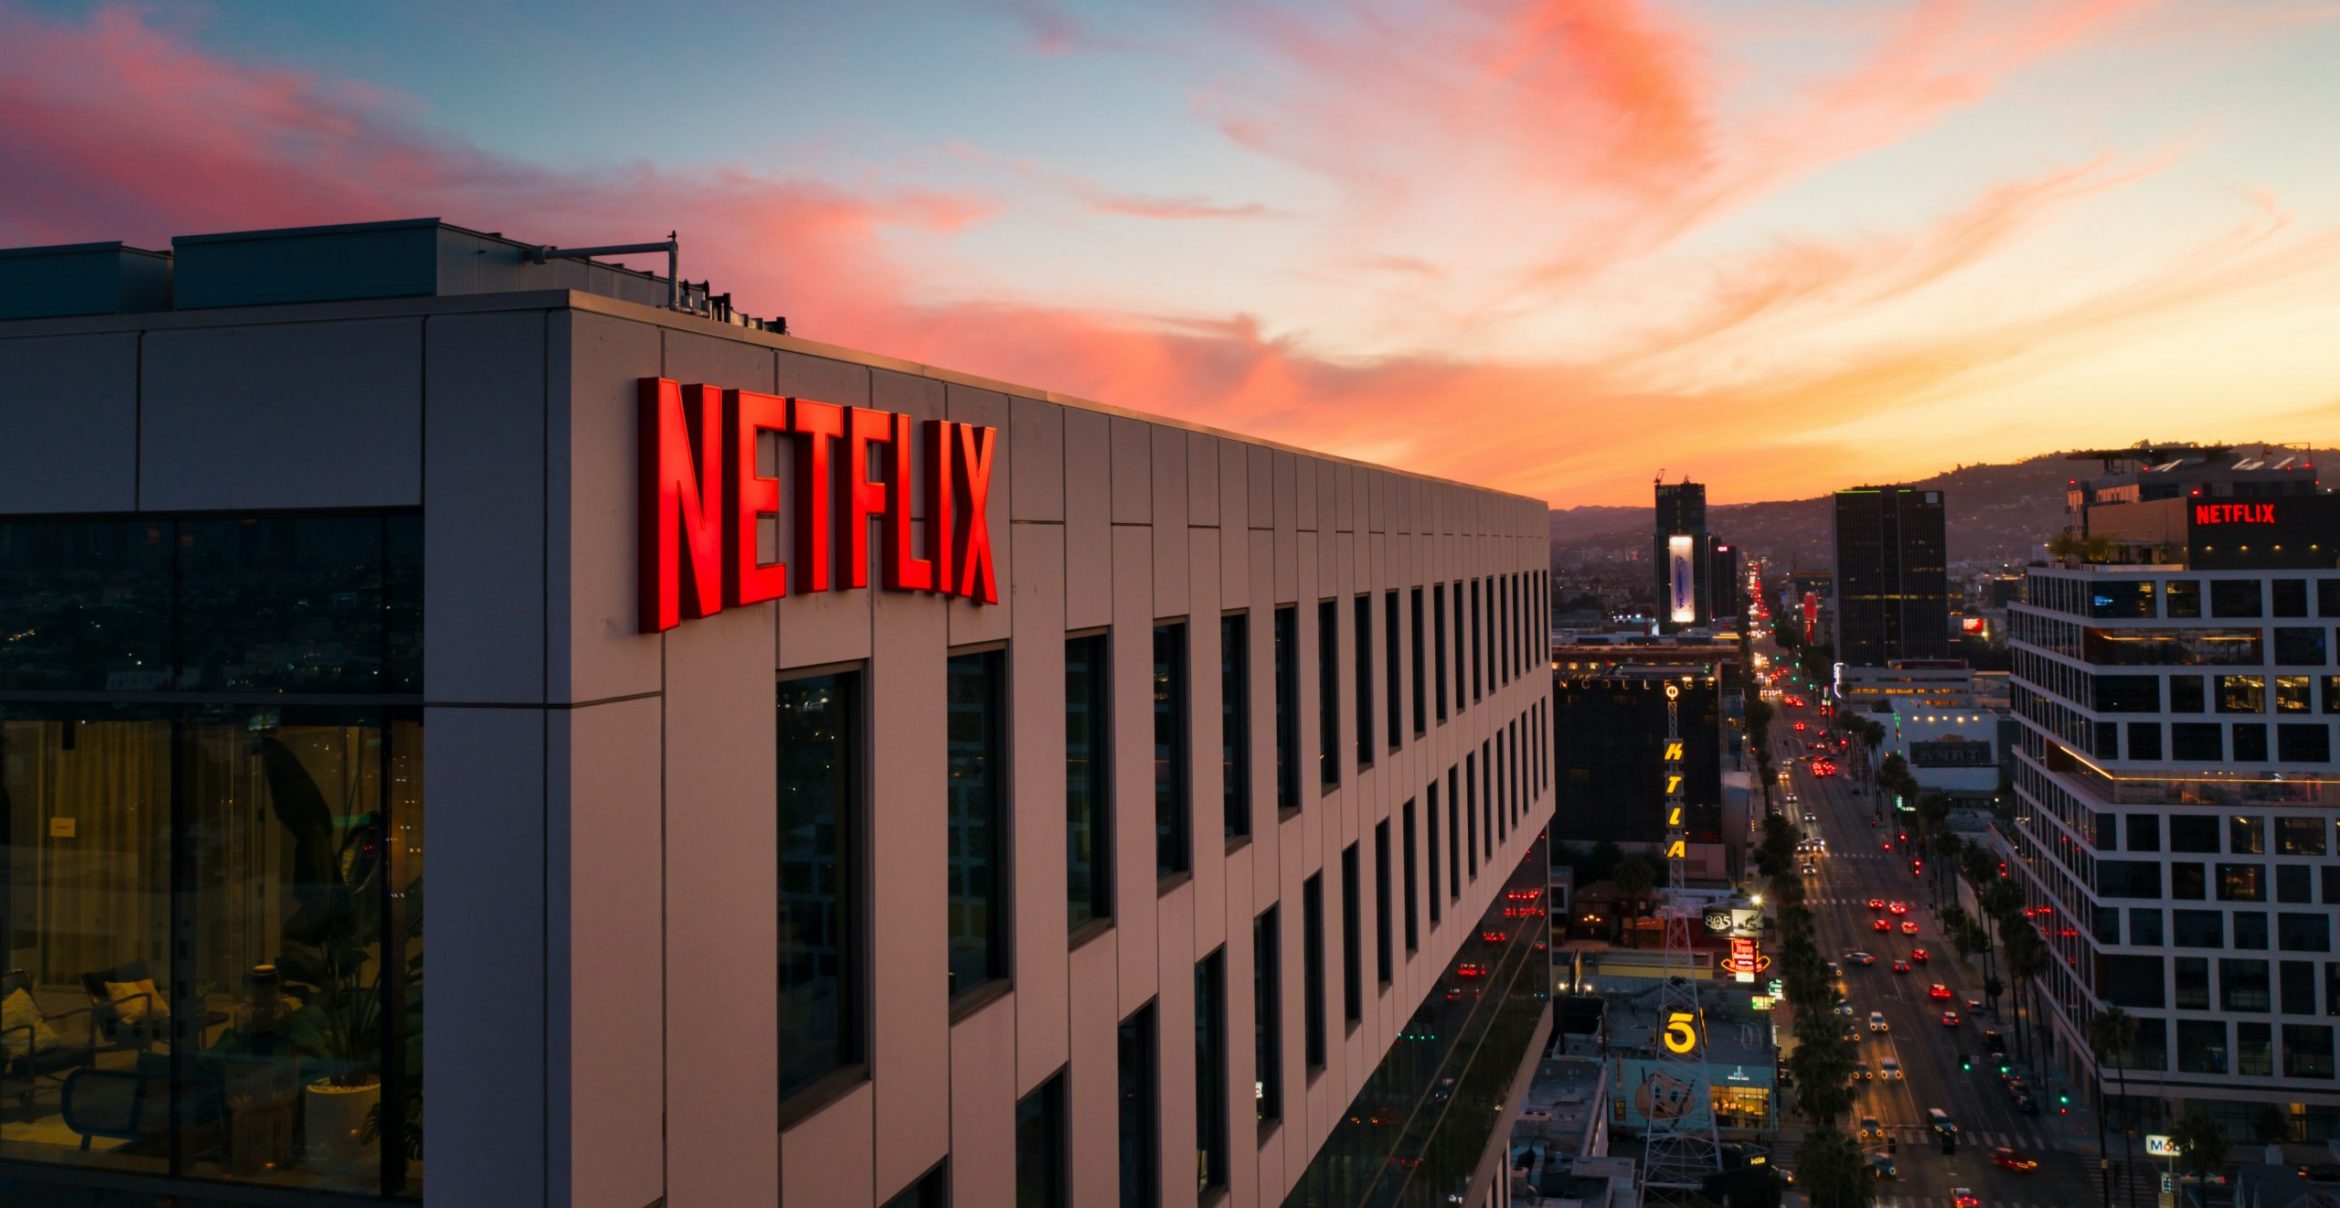 Netflix verliert Abos und macht trotzdem Gewinn